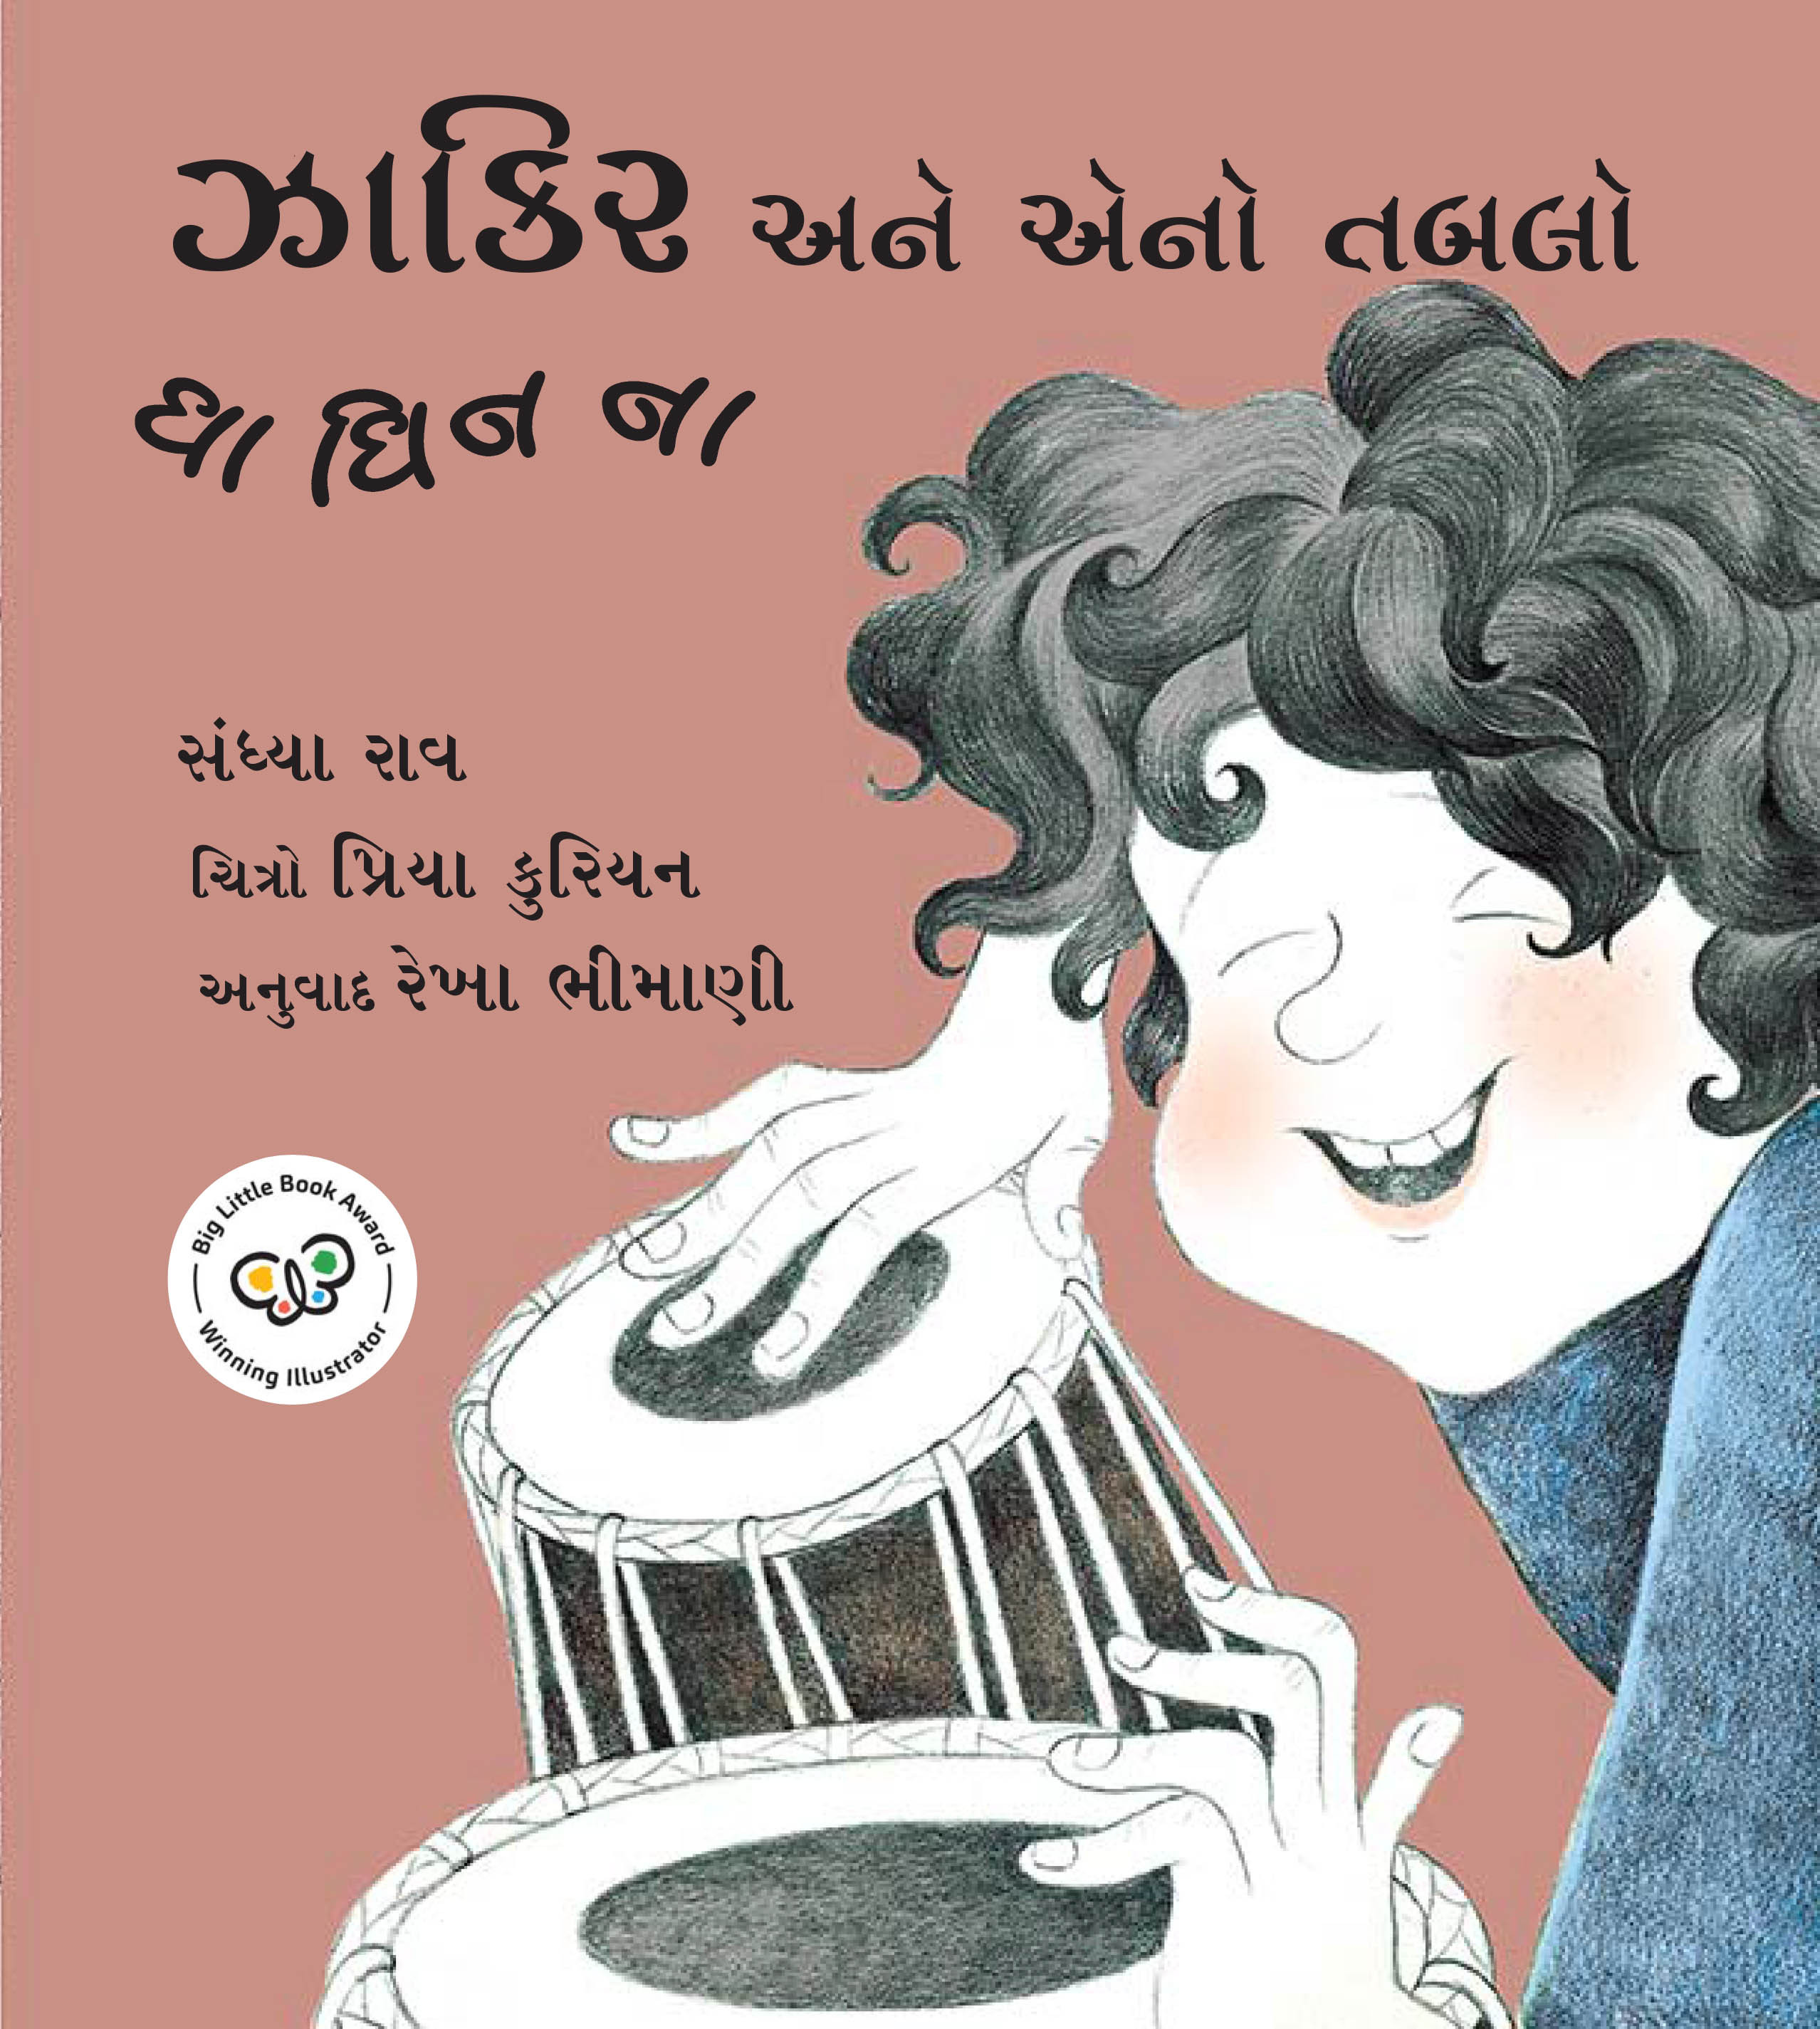 Zakir And His Tabla – Dha Dhin Na/Zakir Aney Teno Tablo – Dha Dhin Na (Gujarati)